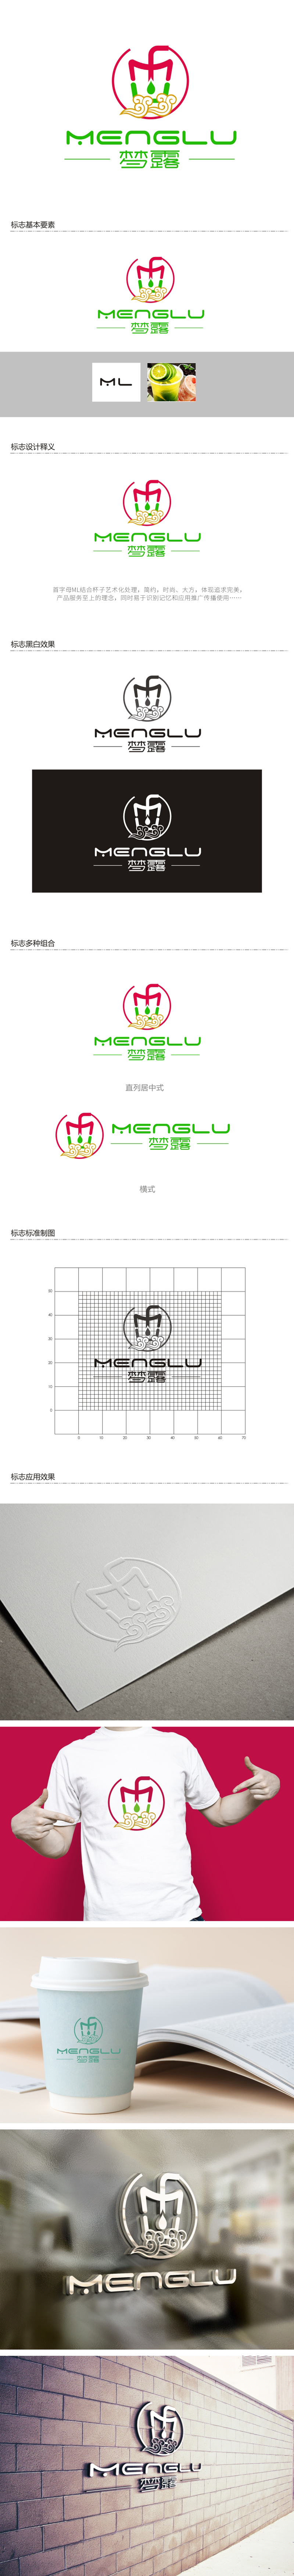 杨占斌的梦露logo设计